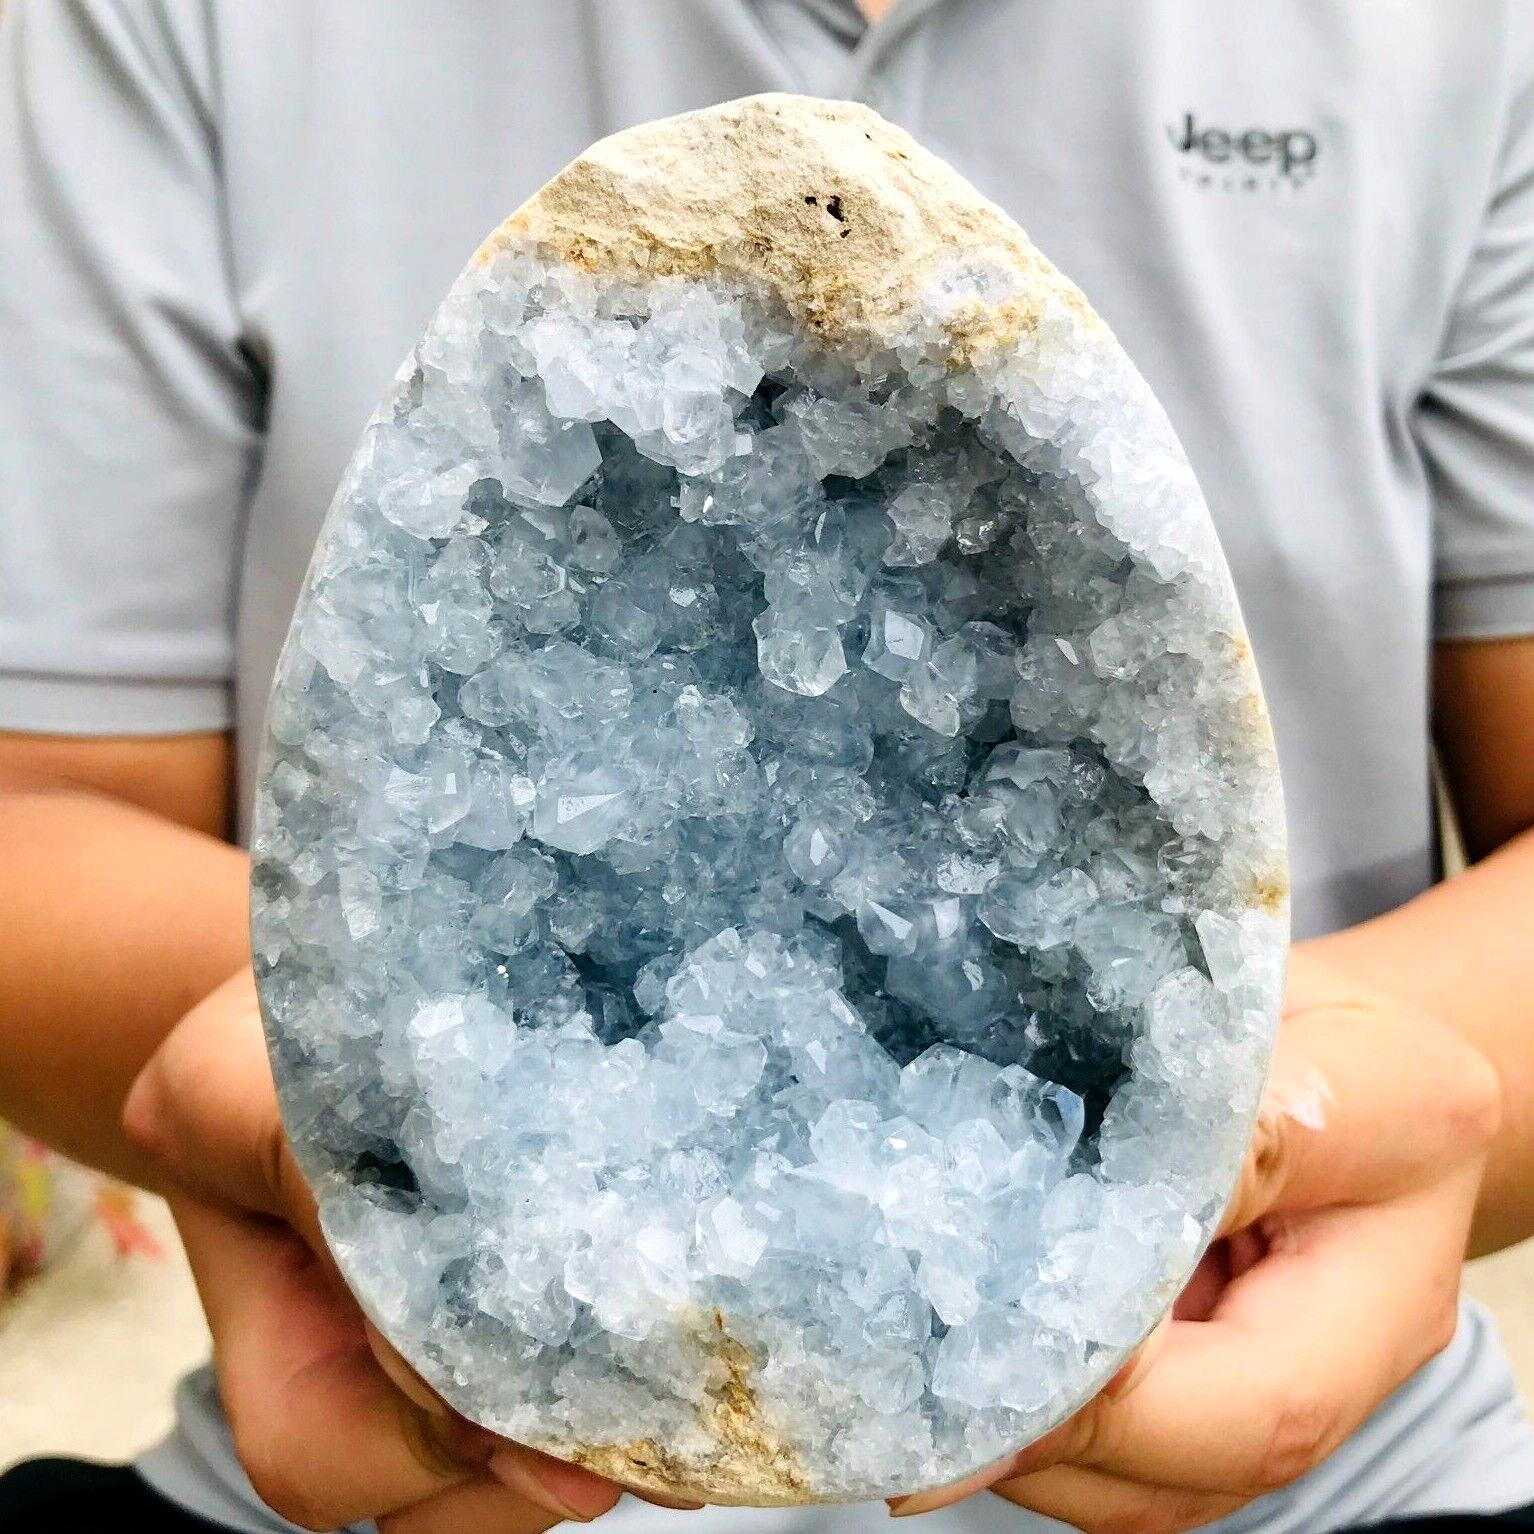 1895g Large Natural Blue Celestite Quartz Crystal Egg Geode Specimen Healing